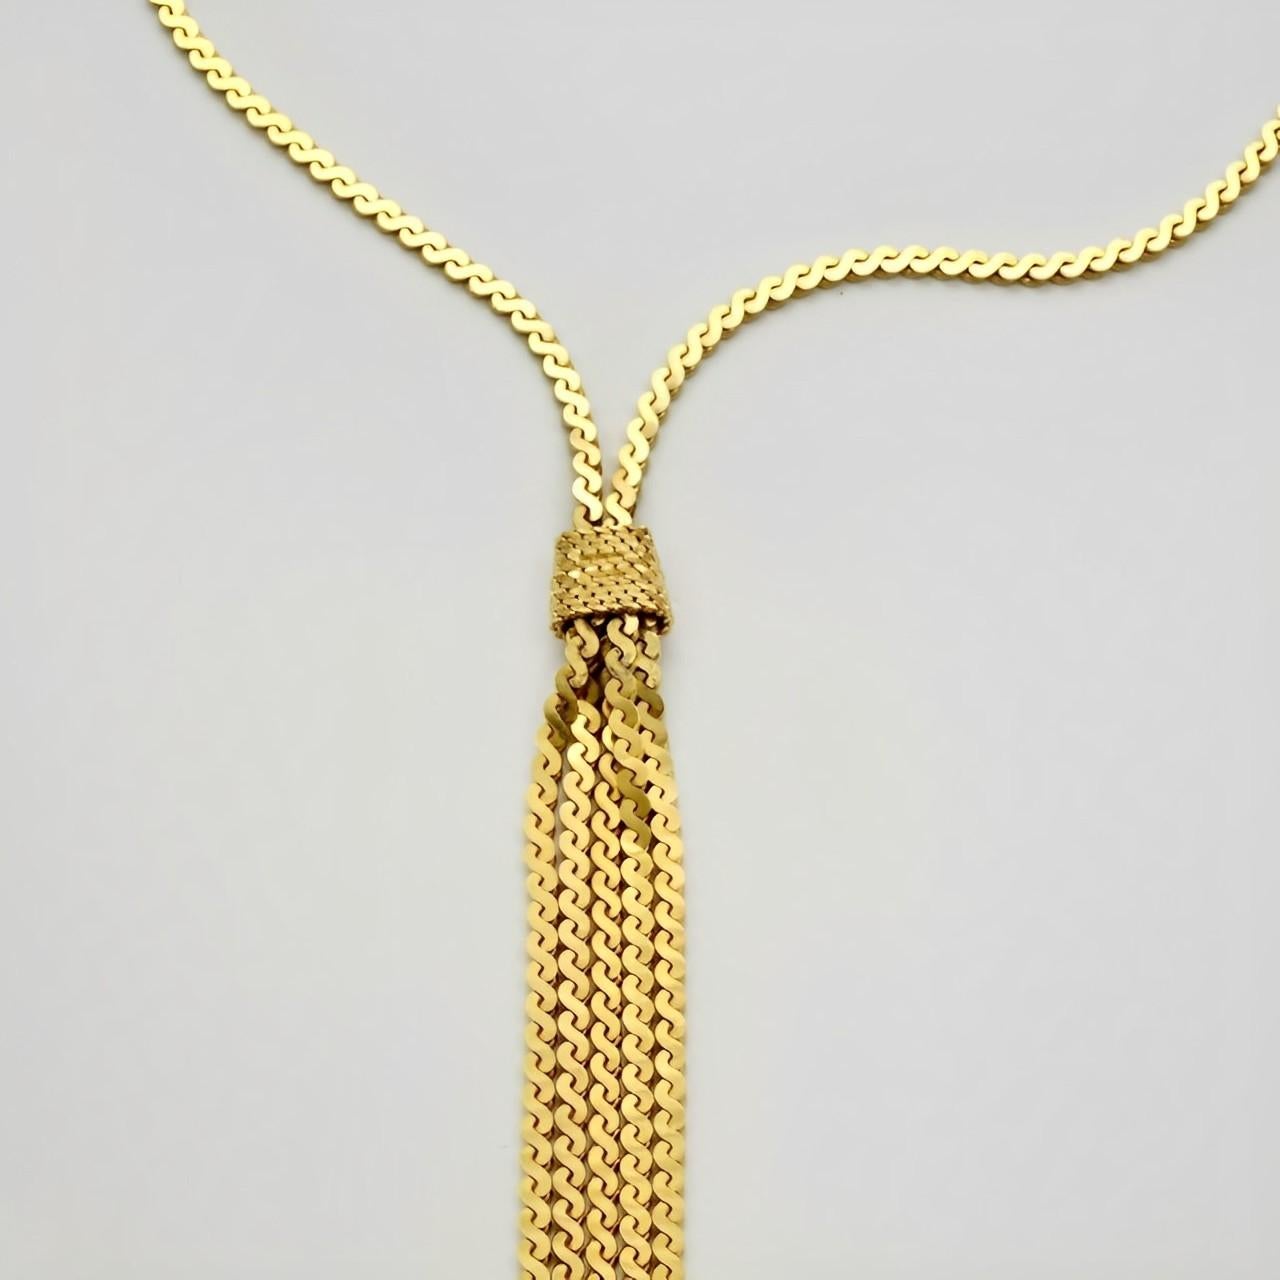 Collier en chaîne serpentine plaquée or, doté d'un joli pompon à cinq brins. Longueur 47,8 cm / 18,8 pouces. Le pompon mesure 11,4 cm de long. Le collier est en très bon état.

Ce magnifique collier vintage date des années 1980.